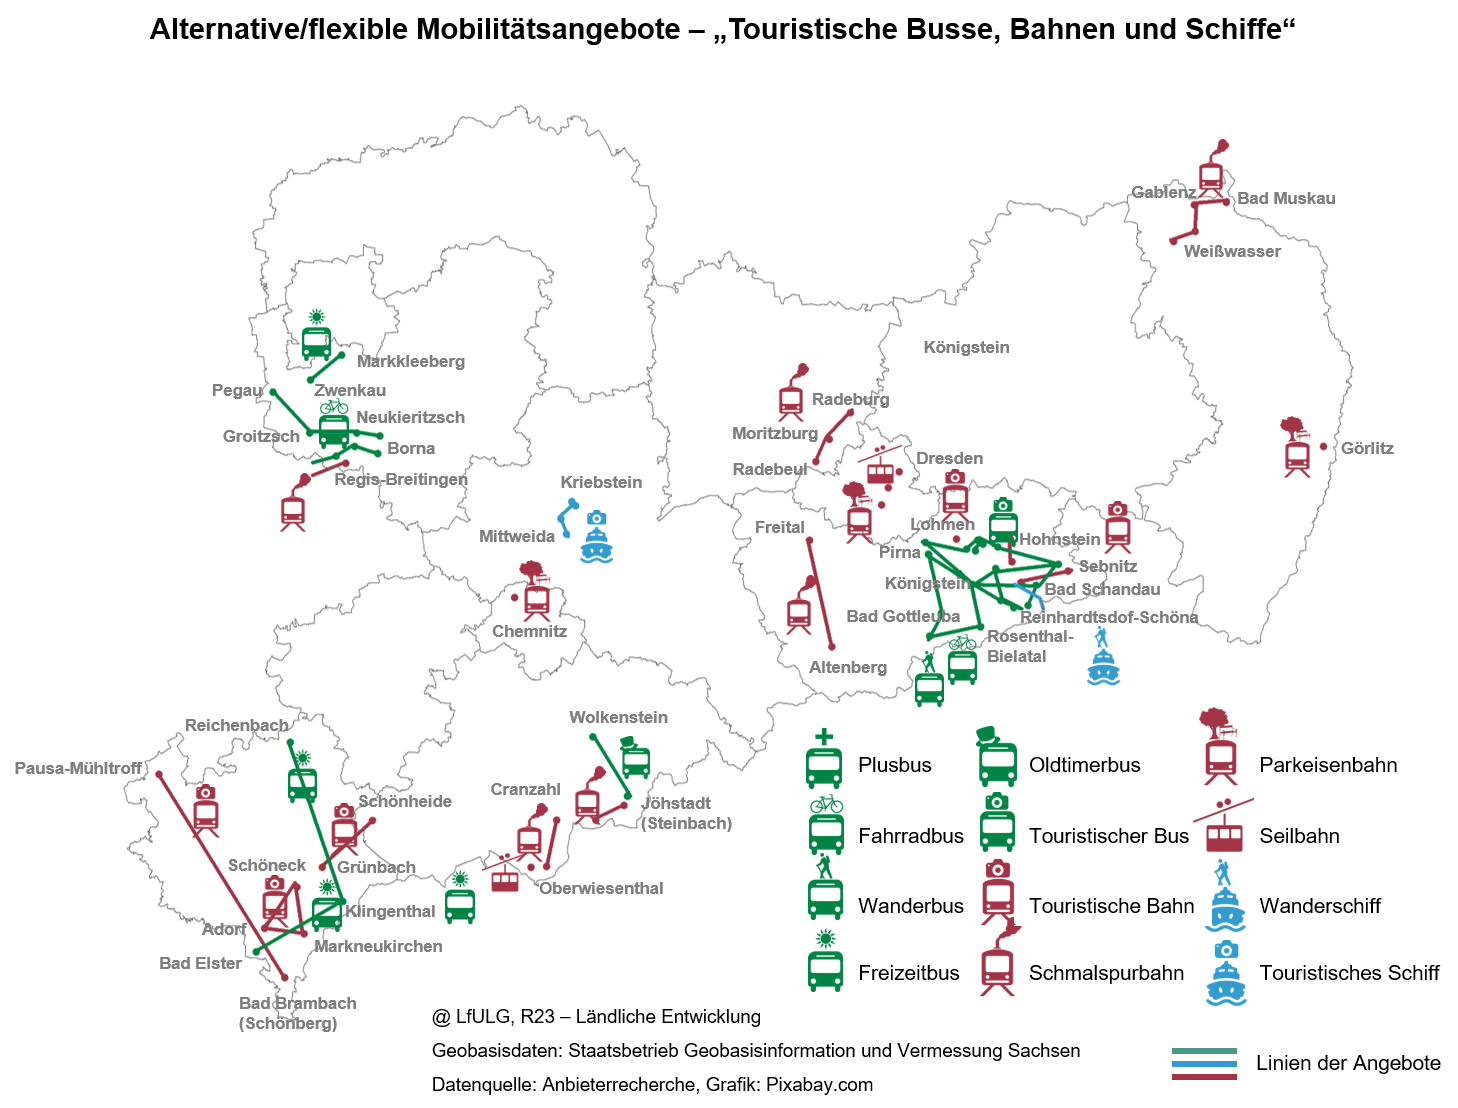 Sachsenkarte mit der Lage der alternativen Mobilitätsangebote mit verschiedenen Symbolen für touristische Busse, Bahnen und Schiffe